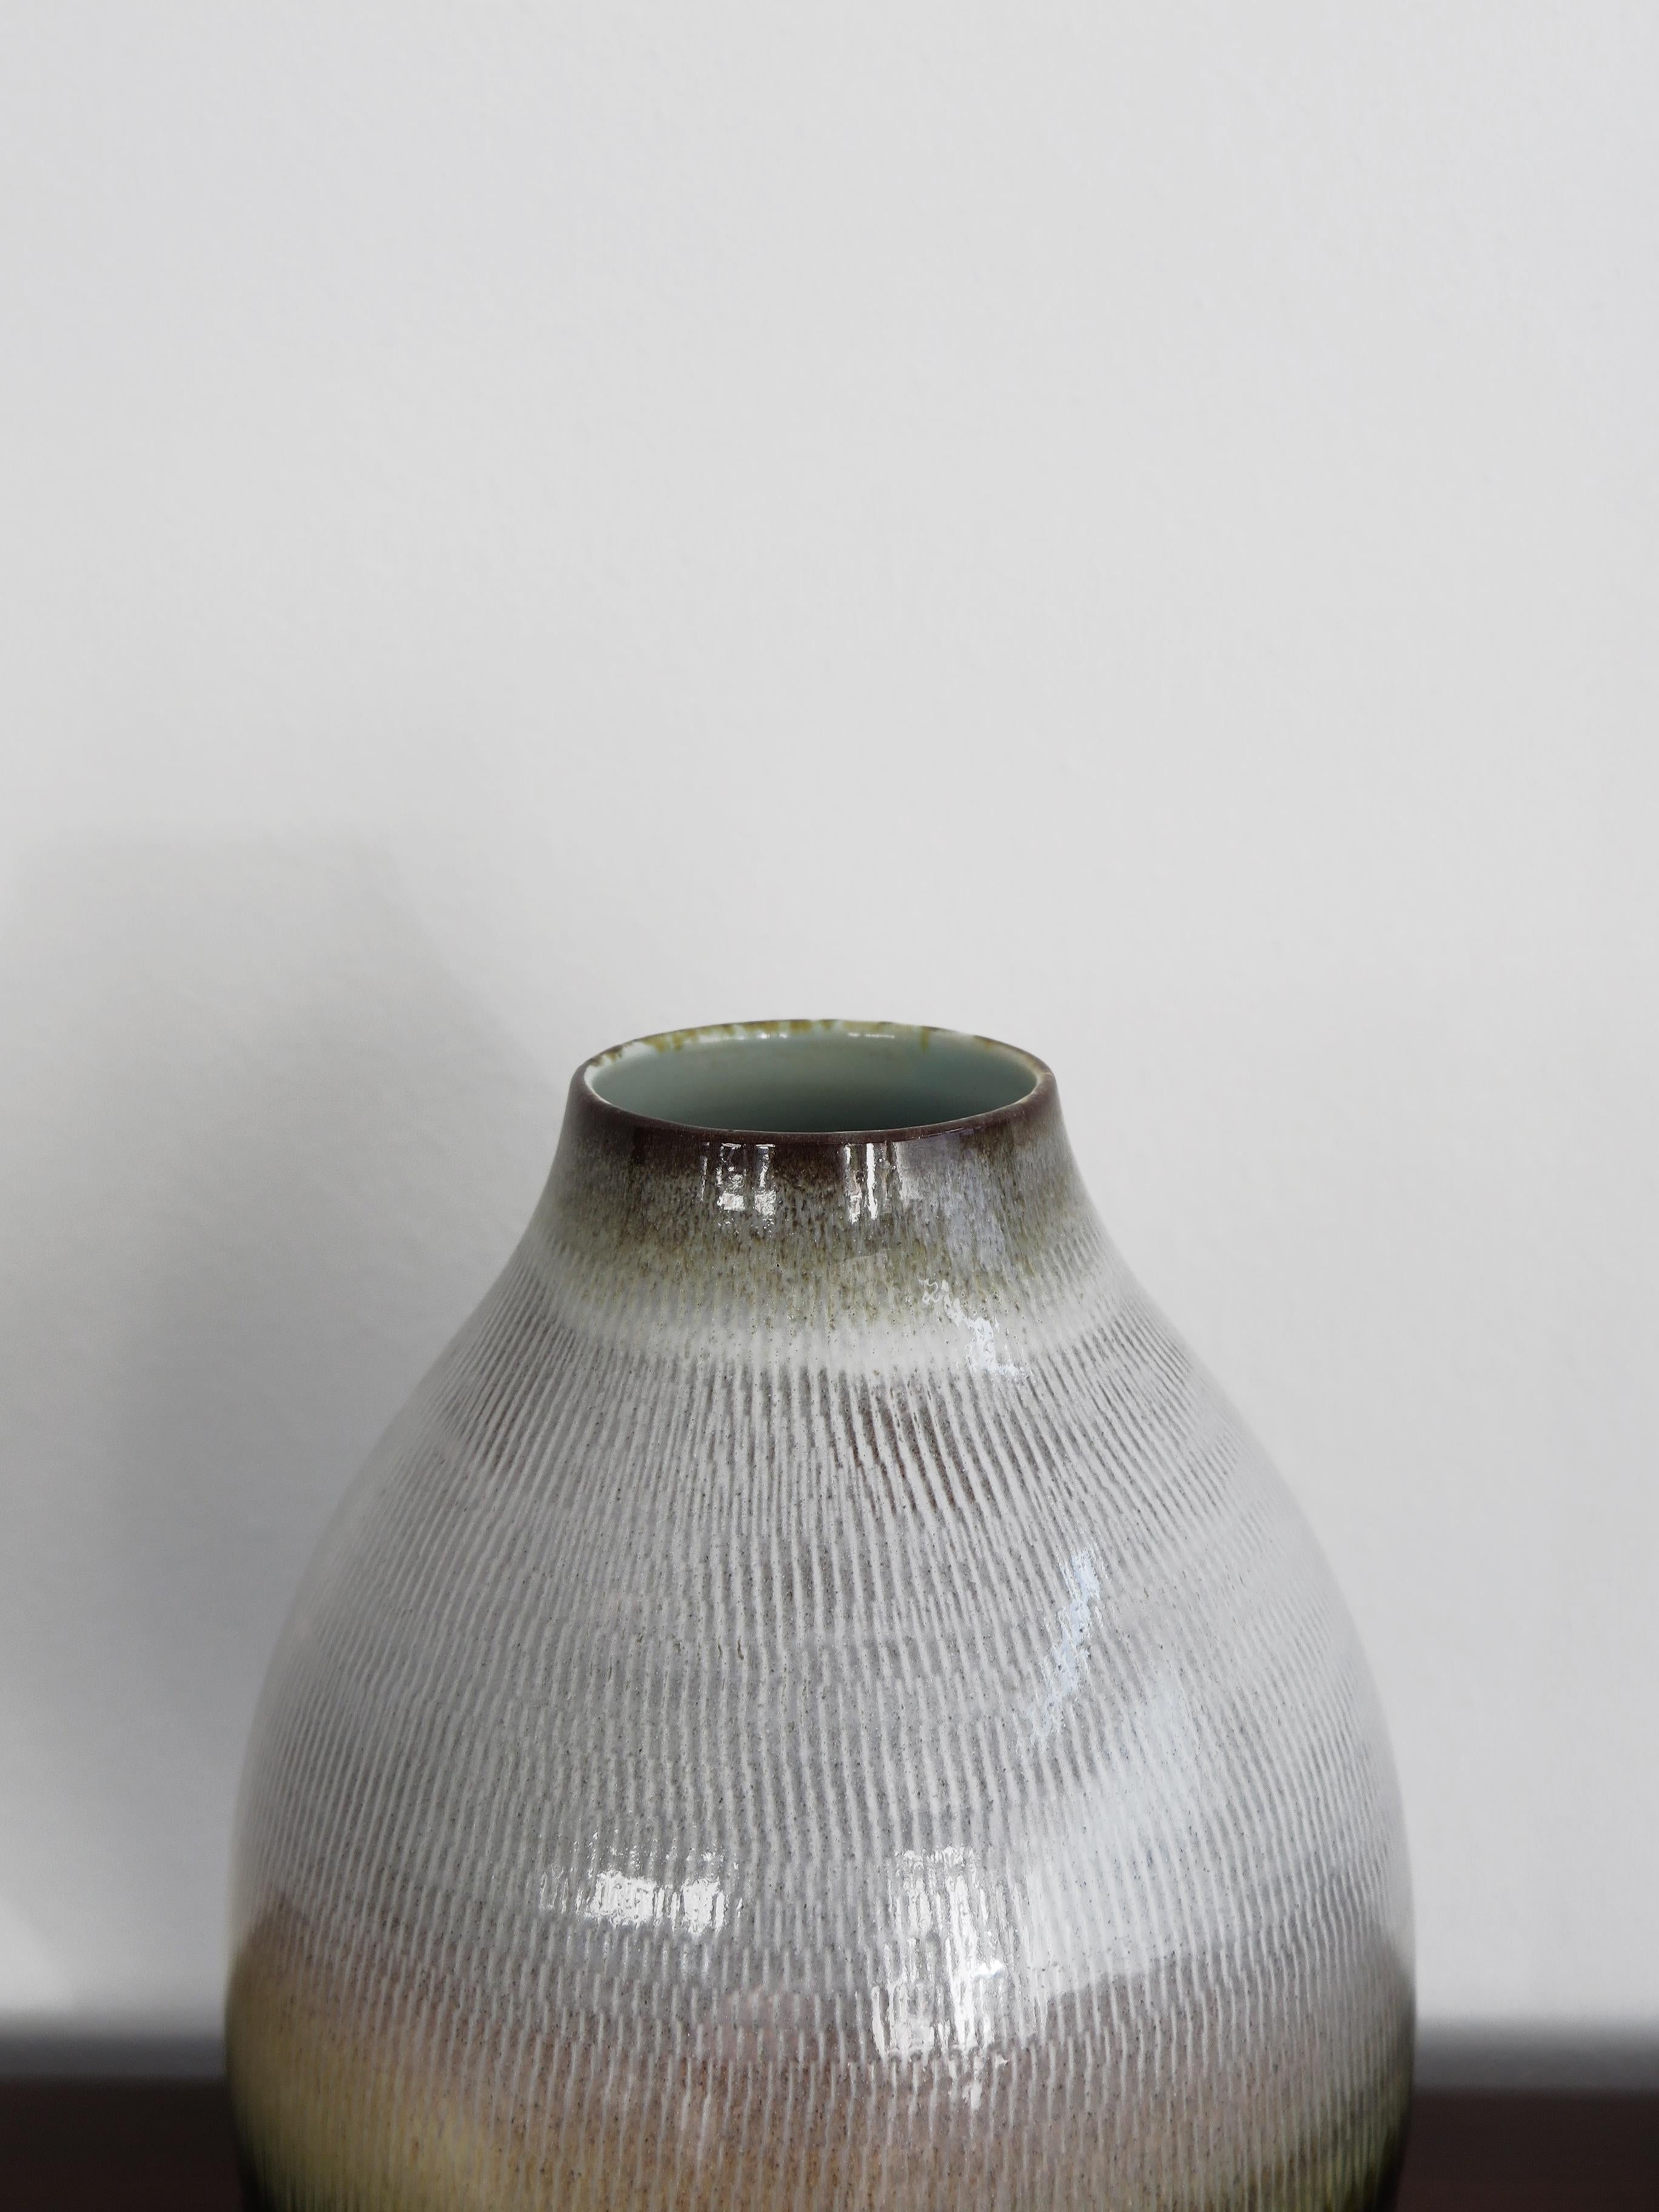 Vase aus zeitgenössischer italienischer Keramik, entworfen und hergestellt von Amaaro, handgefertigt und emailliert mit Oxiden und Kristallen, wird das Werk zu einem kostbaren und skulpturalen Objekt, mit eingravierter Signatur unter dem